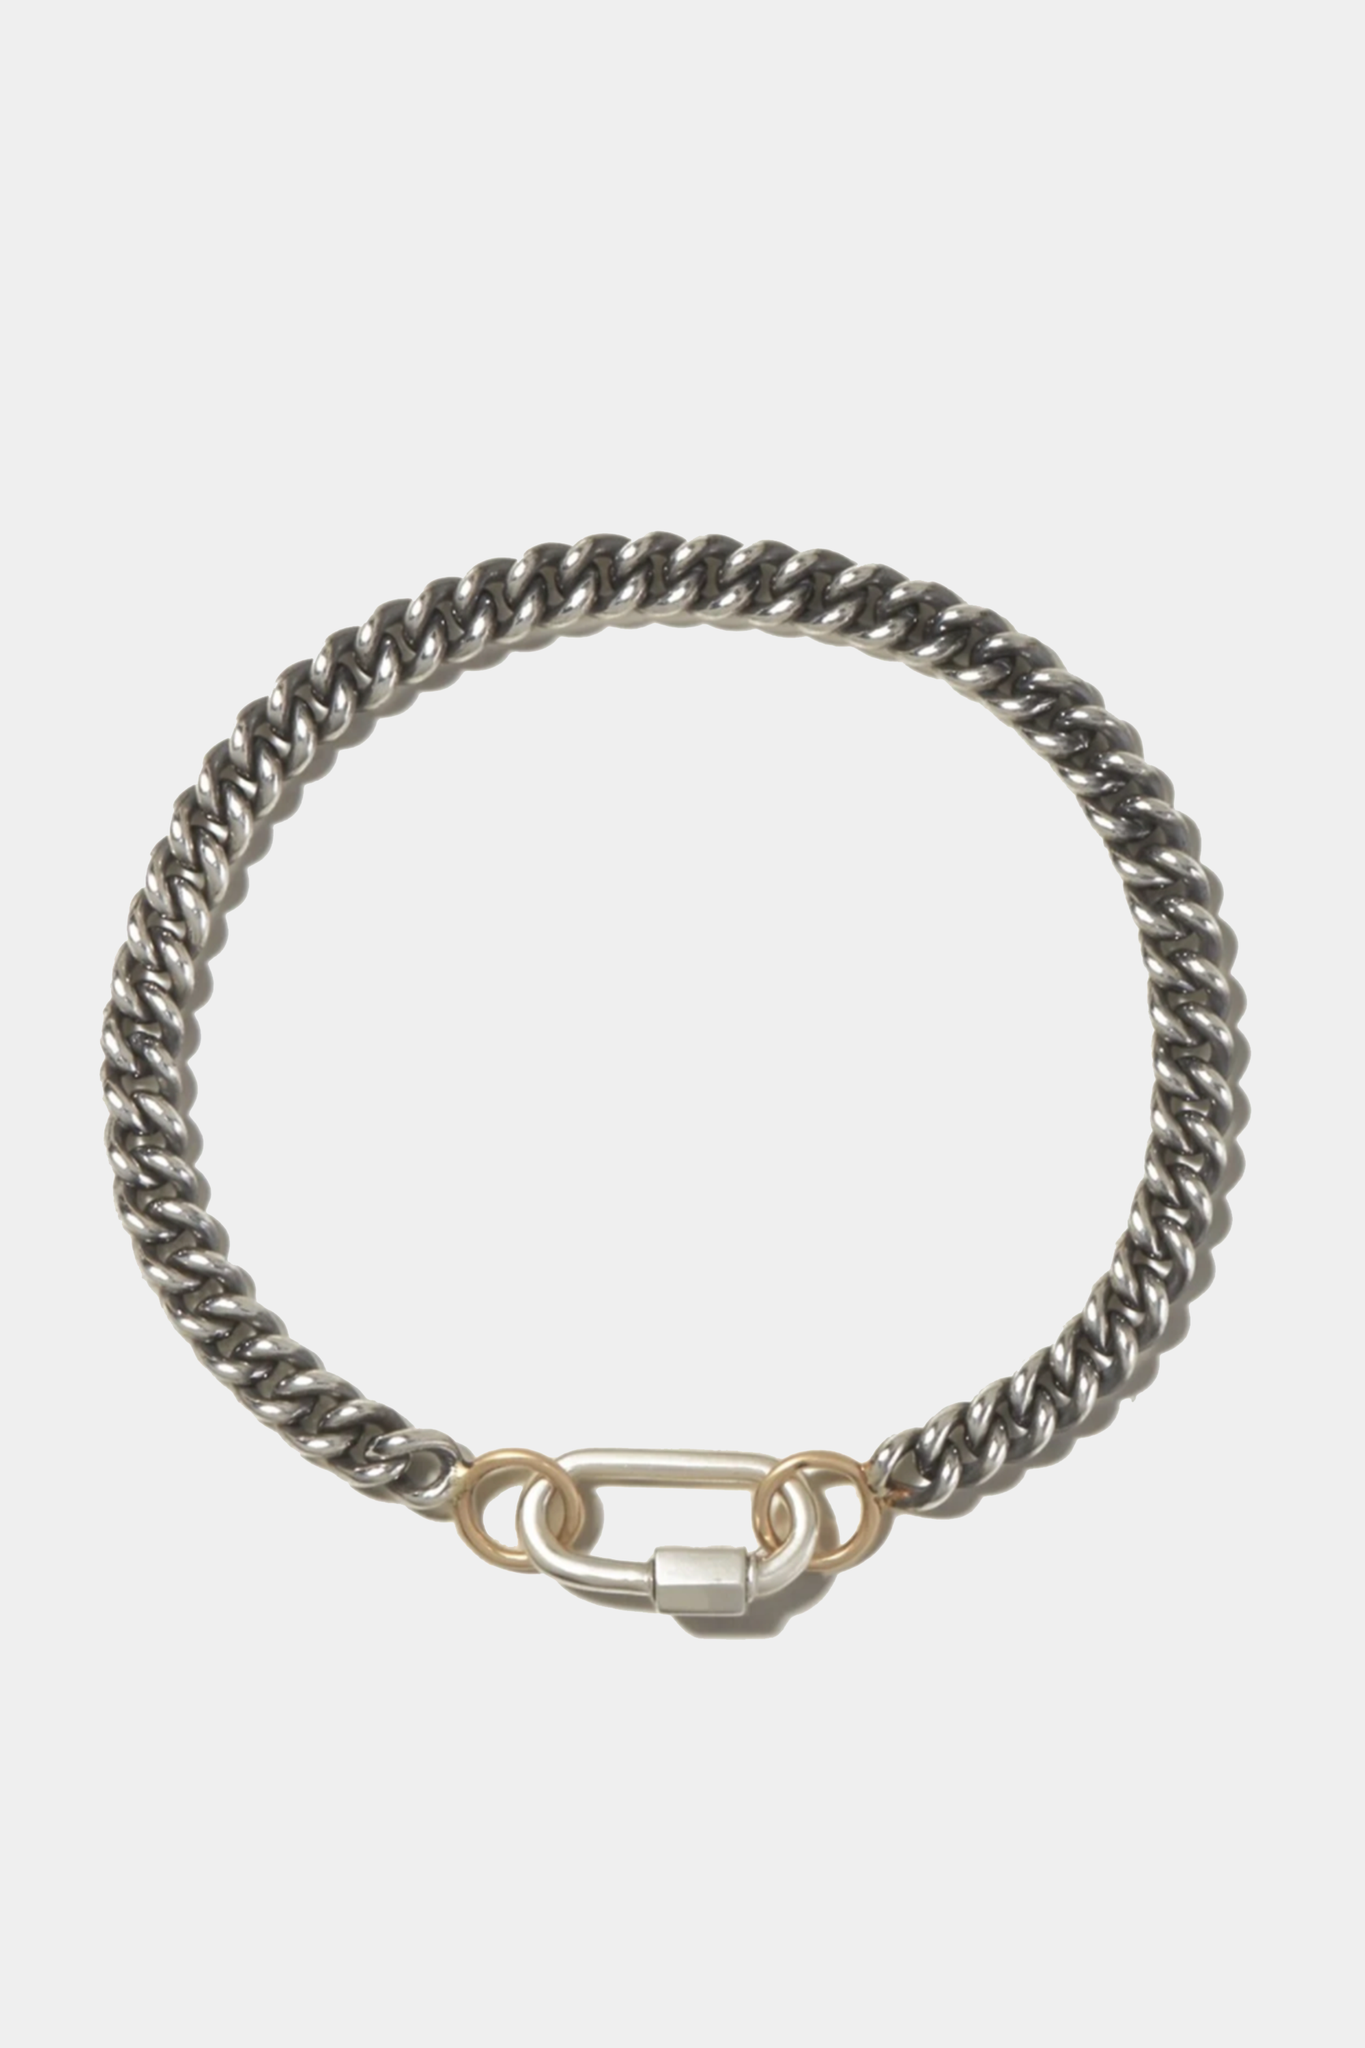 MARLA AARON - 6.5" Heavy Curb Chain in Silver bracelet, silver